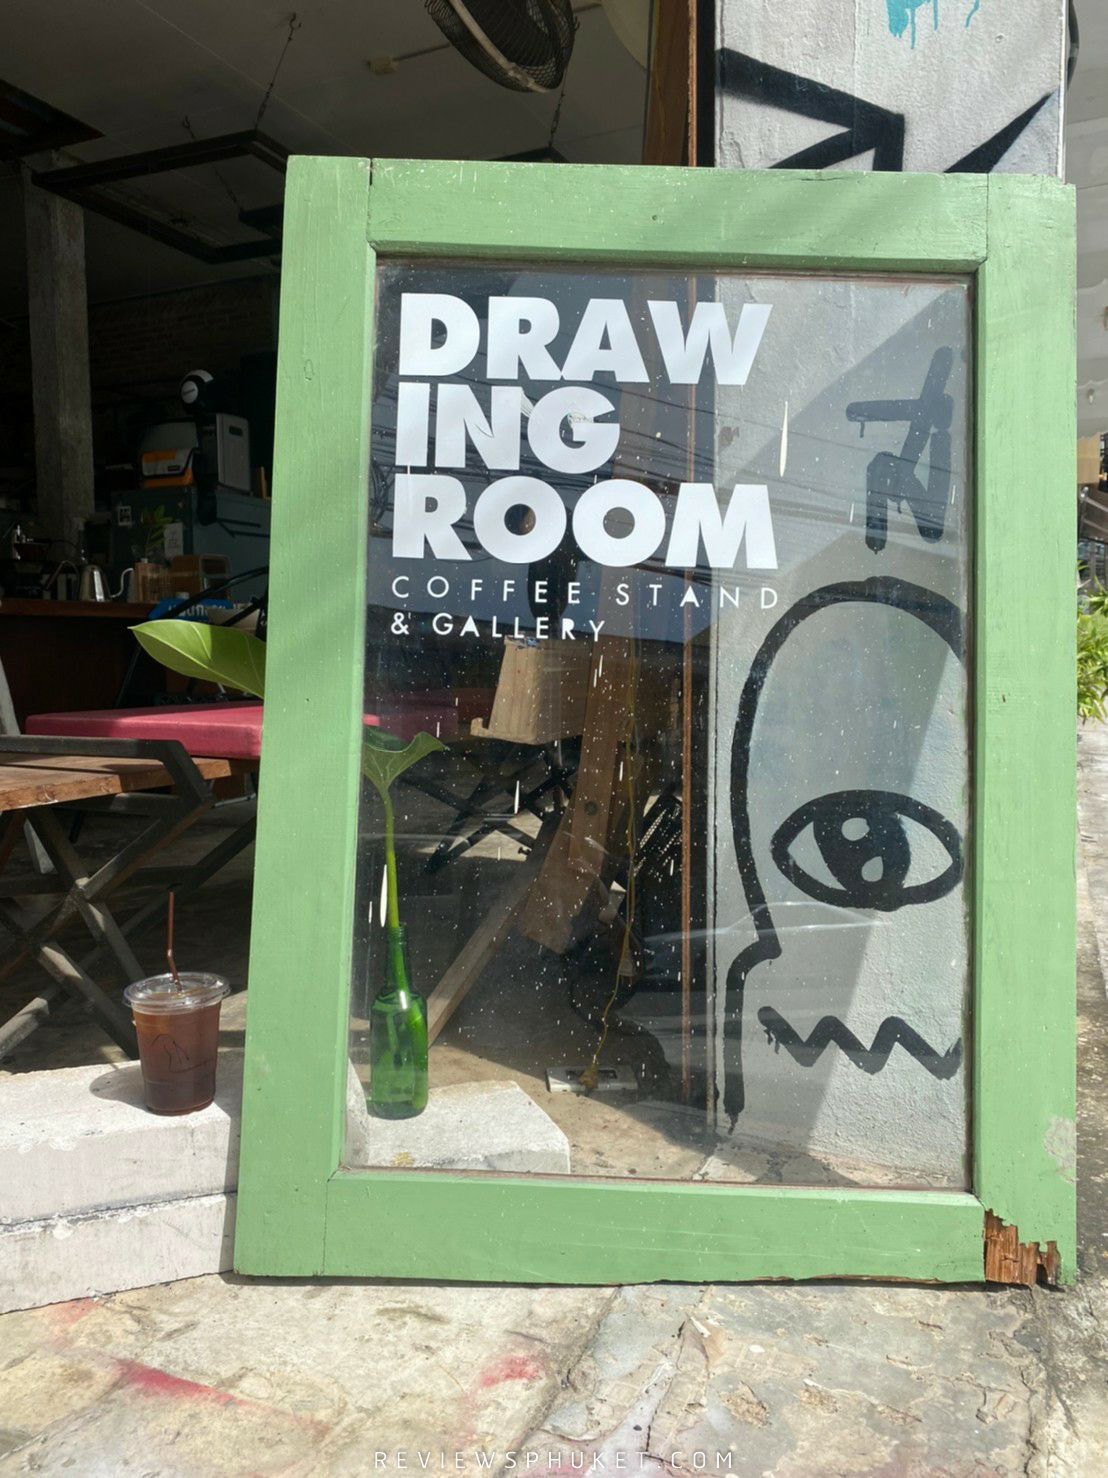   drawingroom